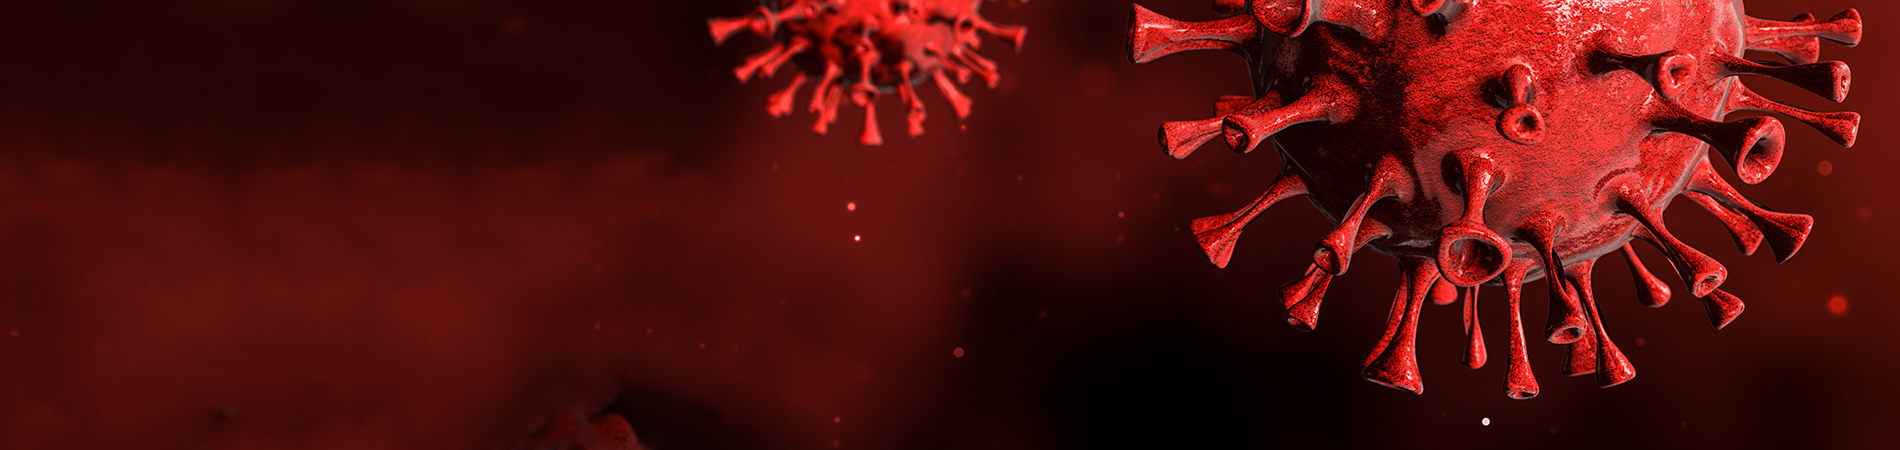 Representación en 3D del coronavirus contra fondo rojo